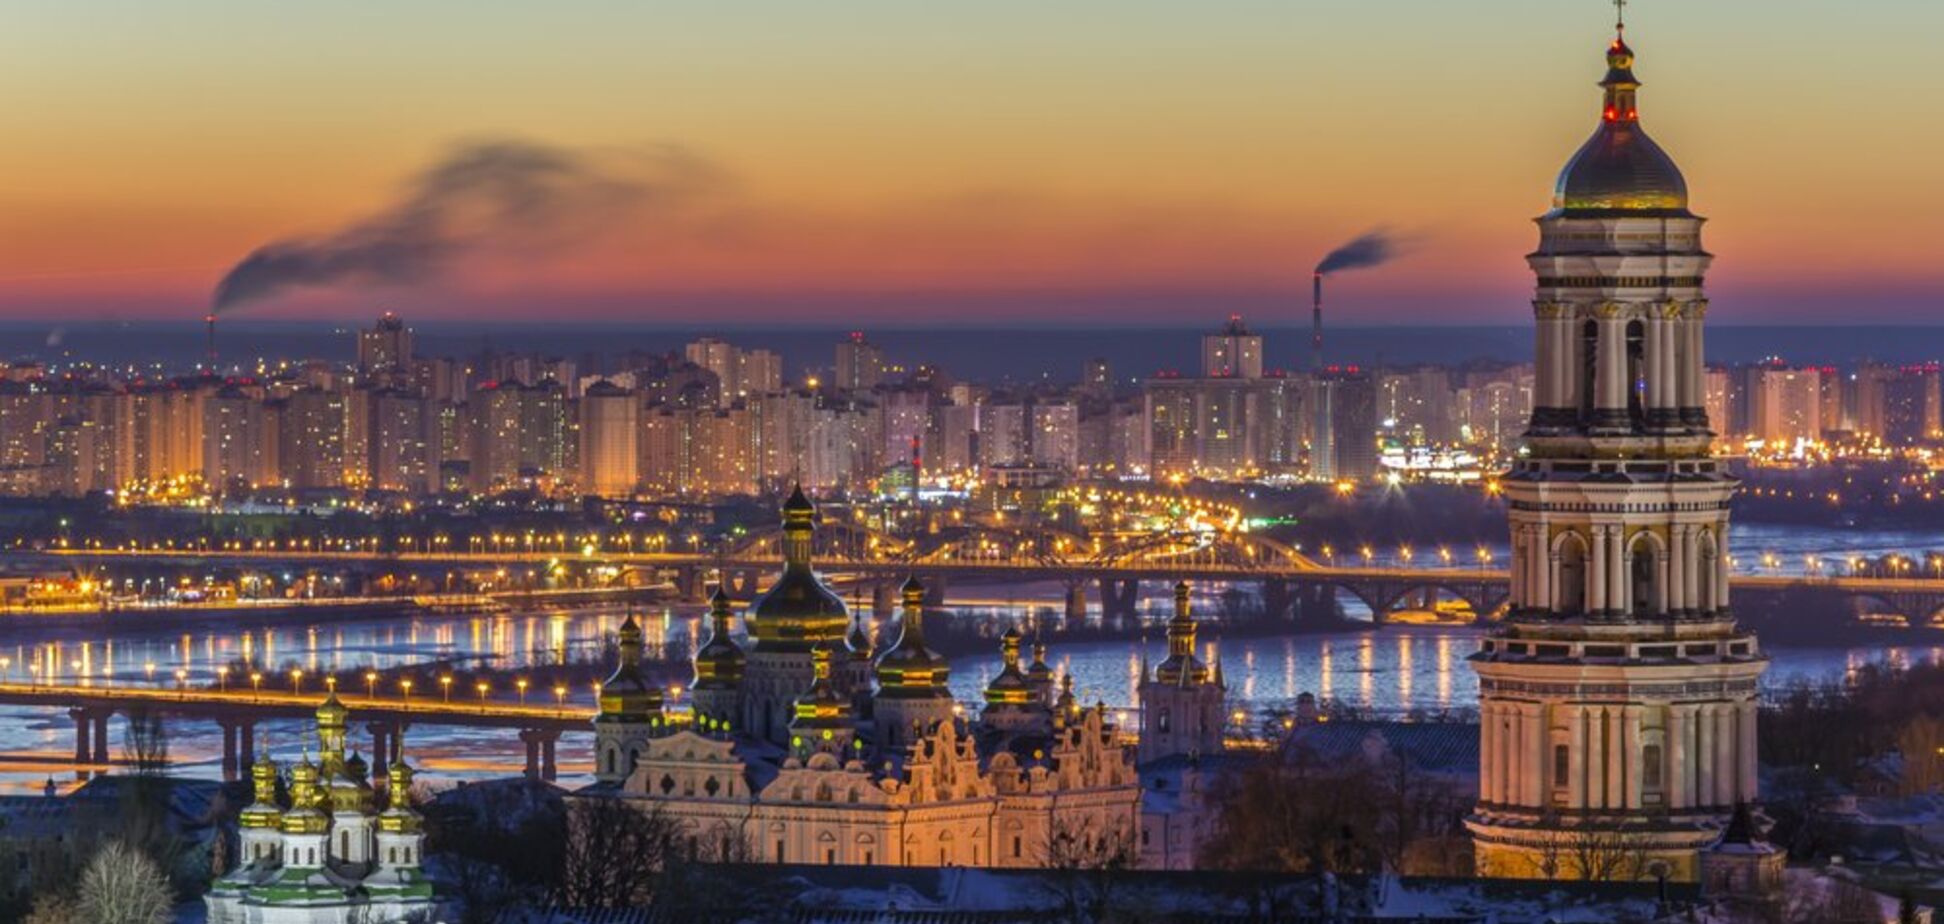 Київ потребує перезавантаження влади: голос кожного киянина має бути почутий